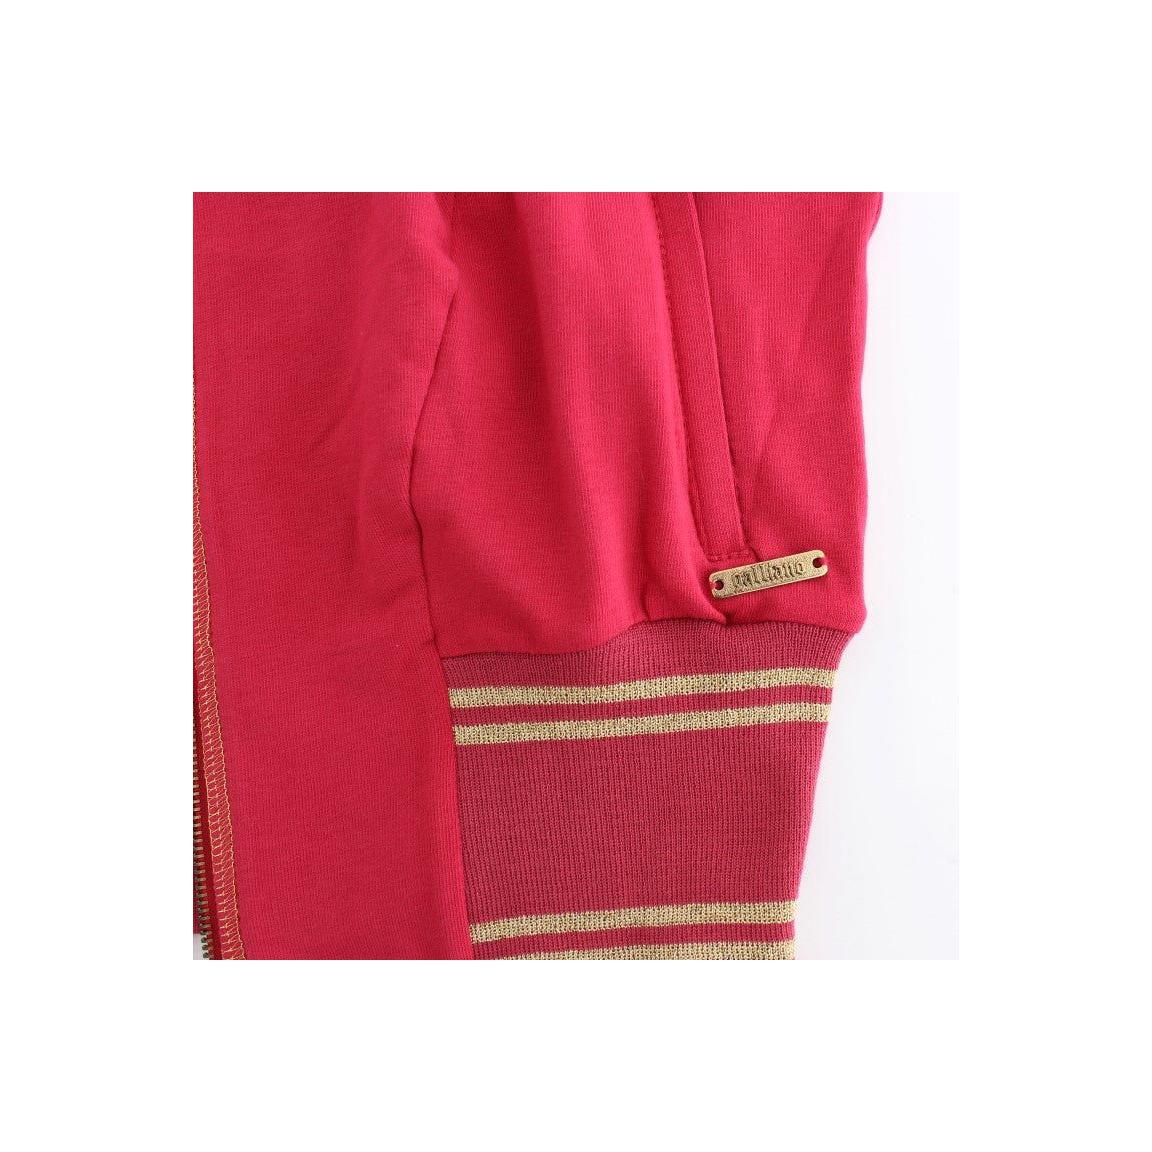 John Galliano | Pink Mock Zip Cardigan Sweatshirt Sweater | McRichard Designer Brands